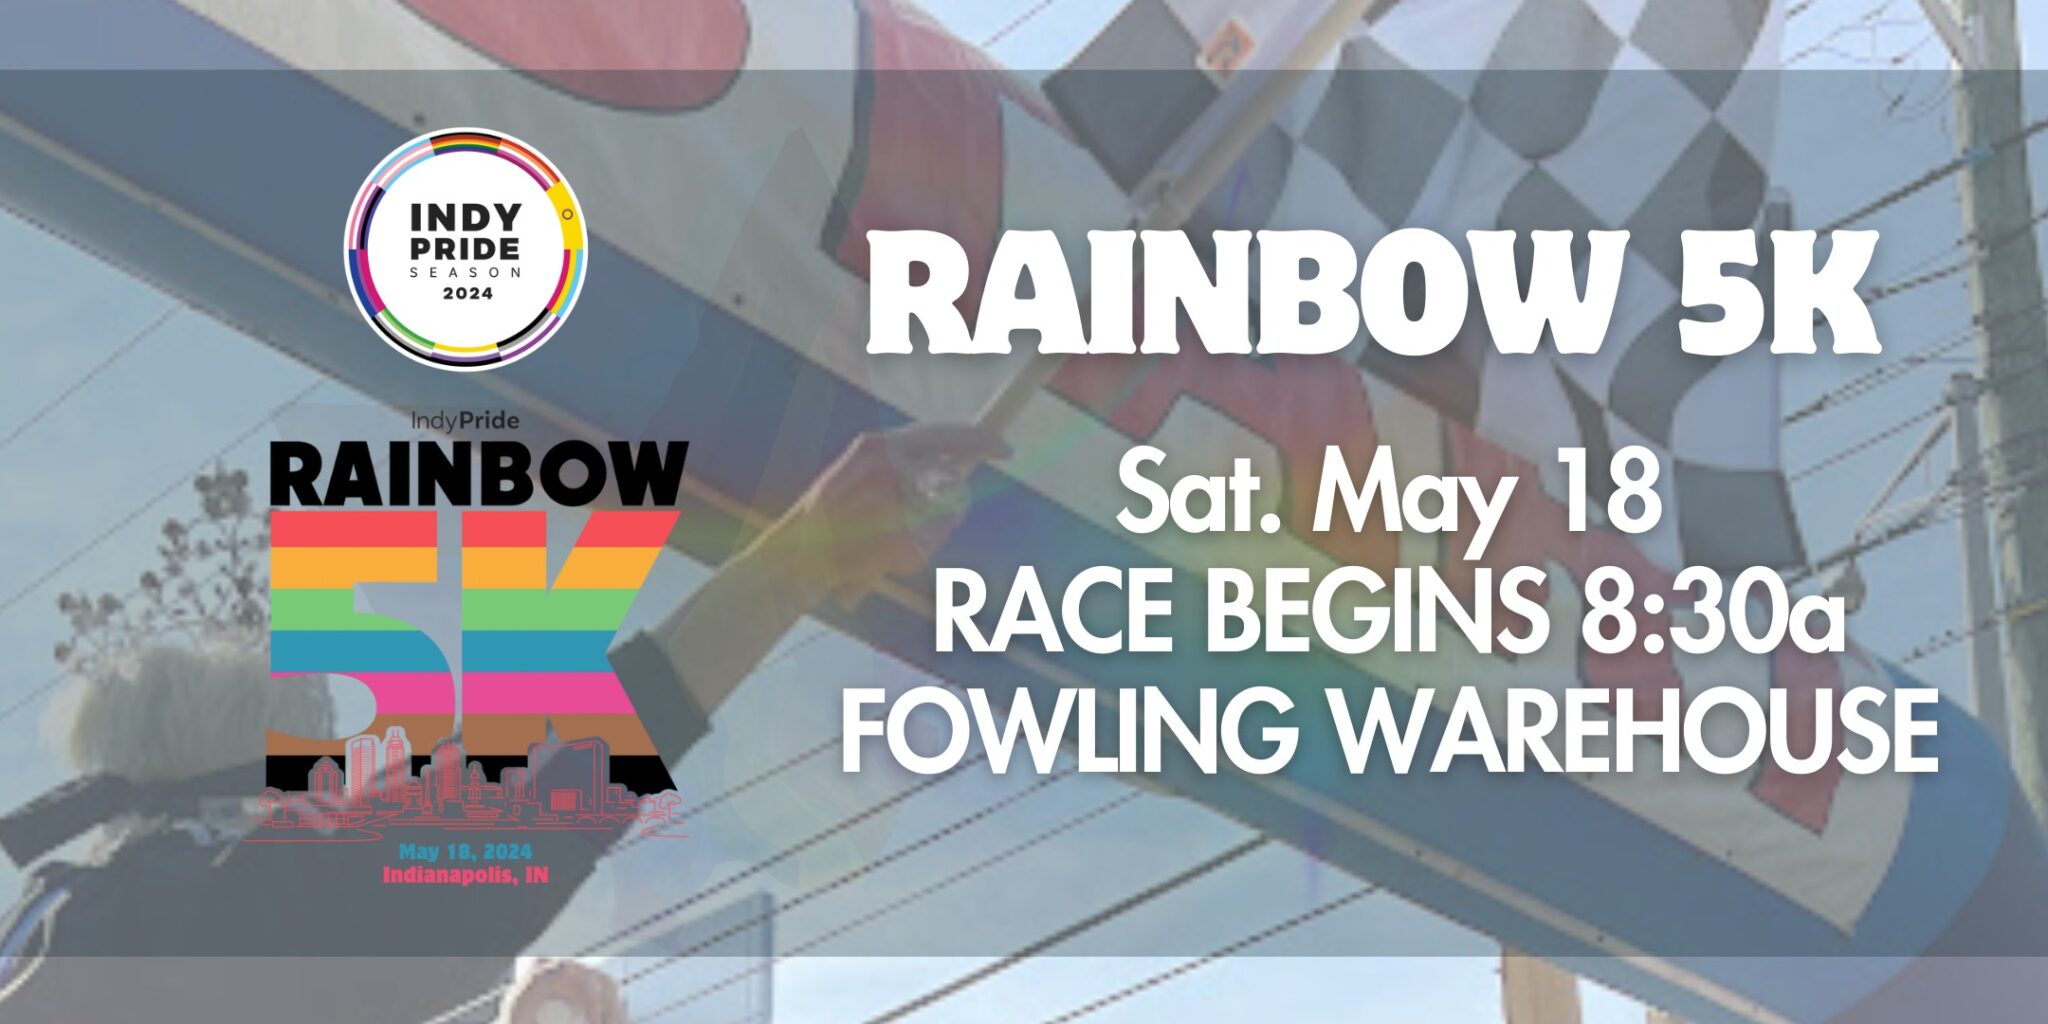 Indy Pride Rainbow 5K Run/Walk Indy Pride, Inc.